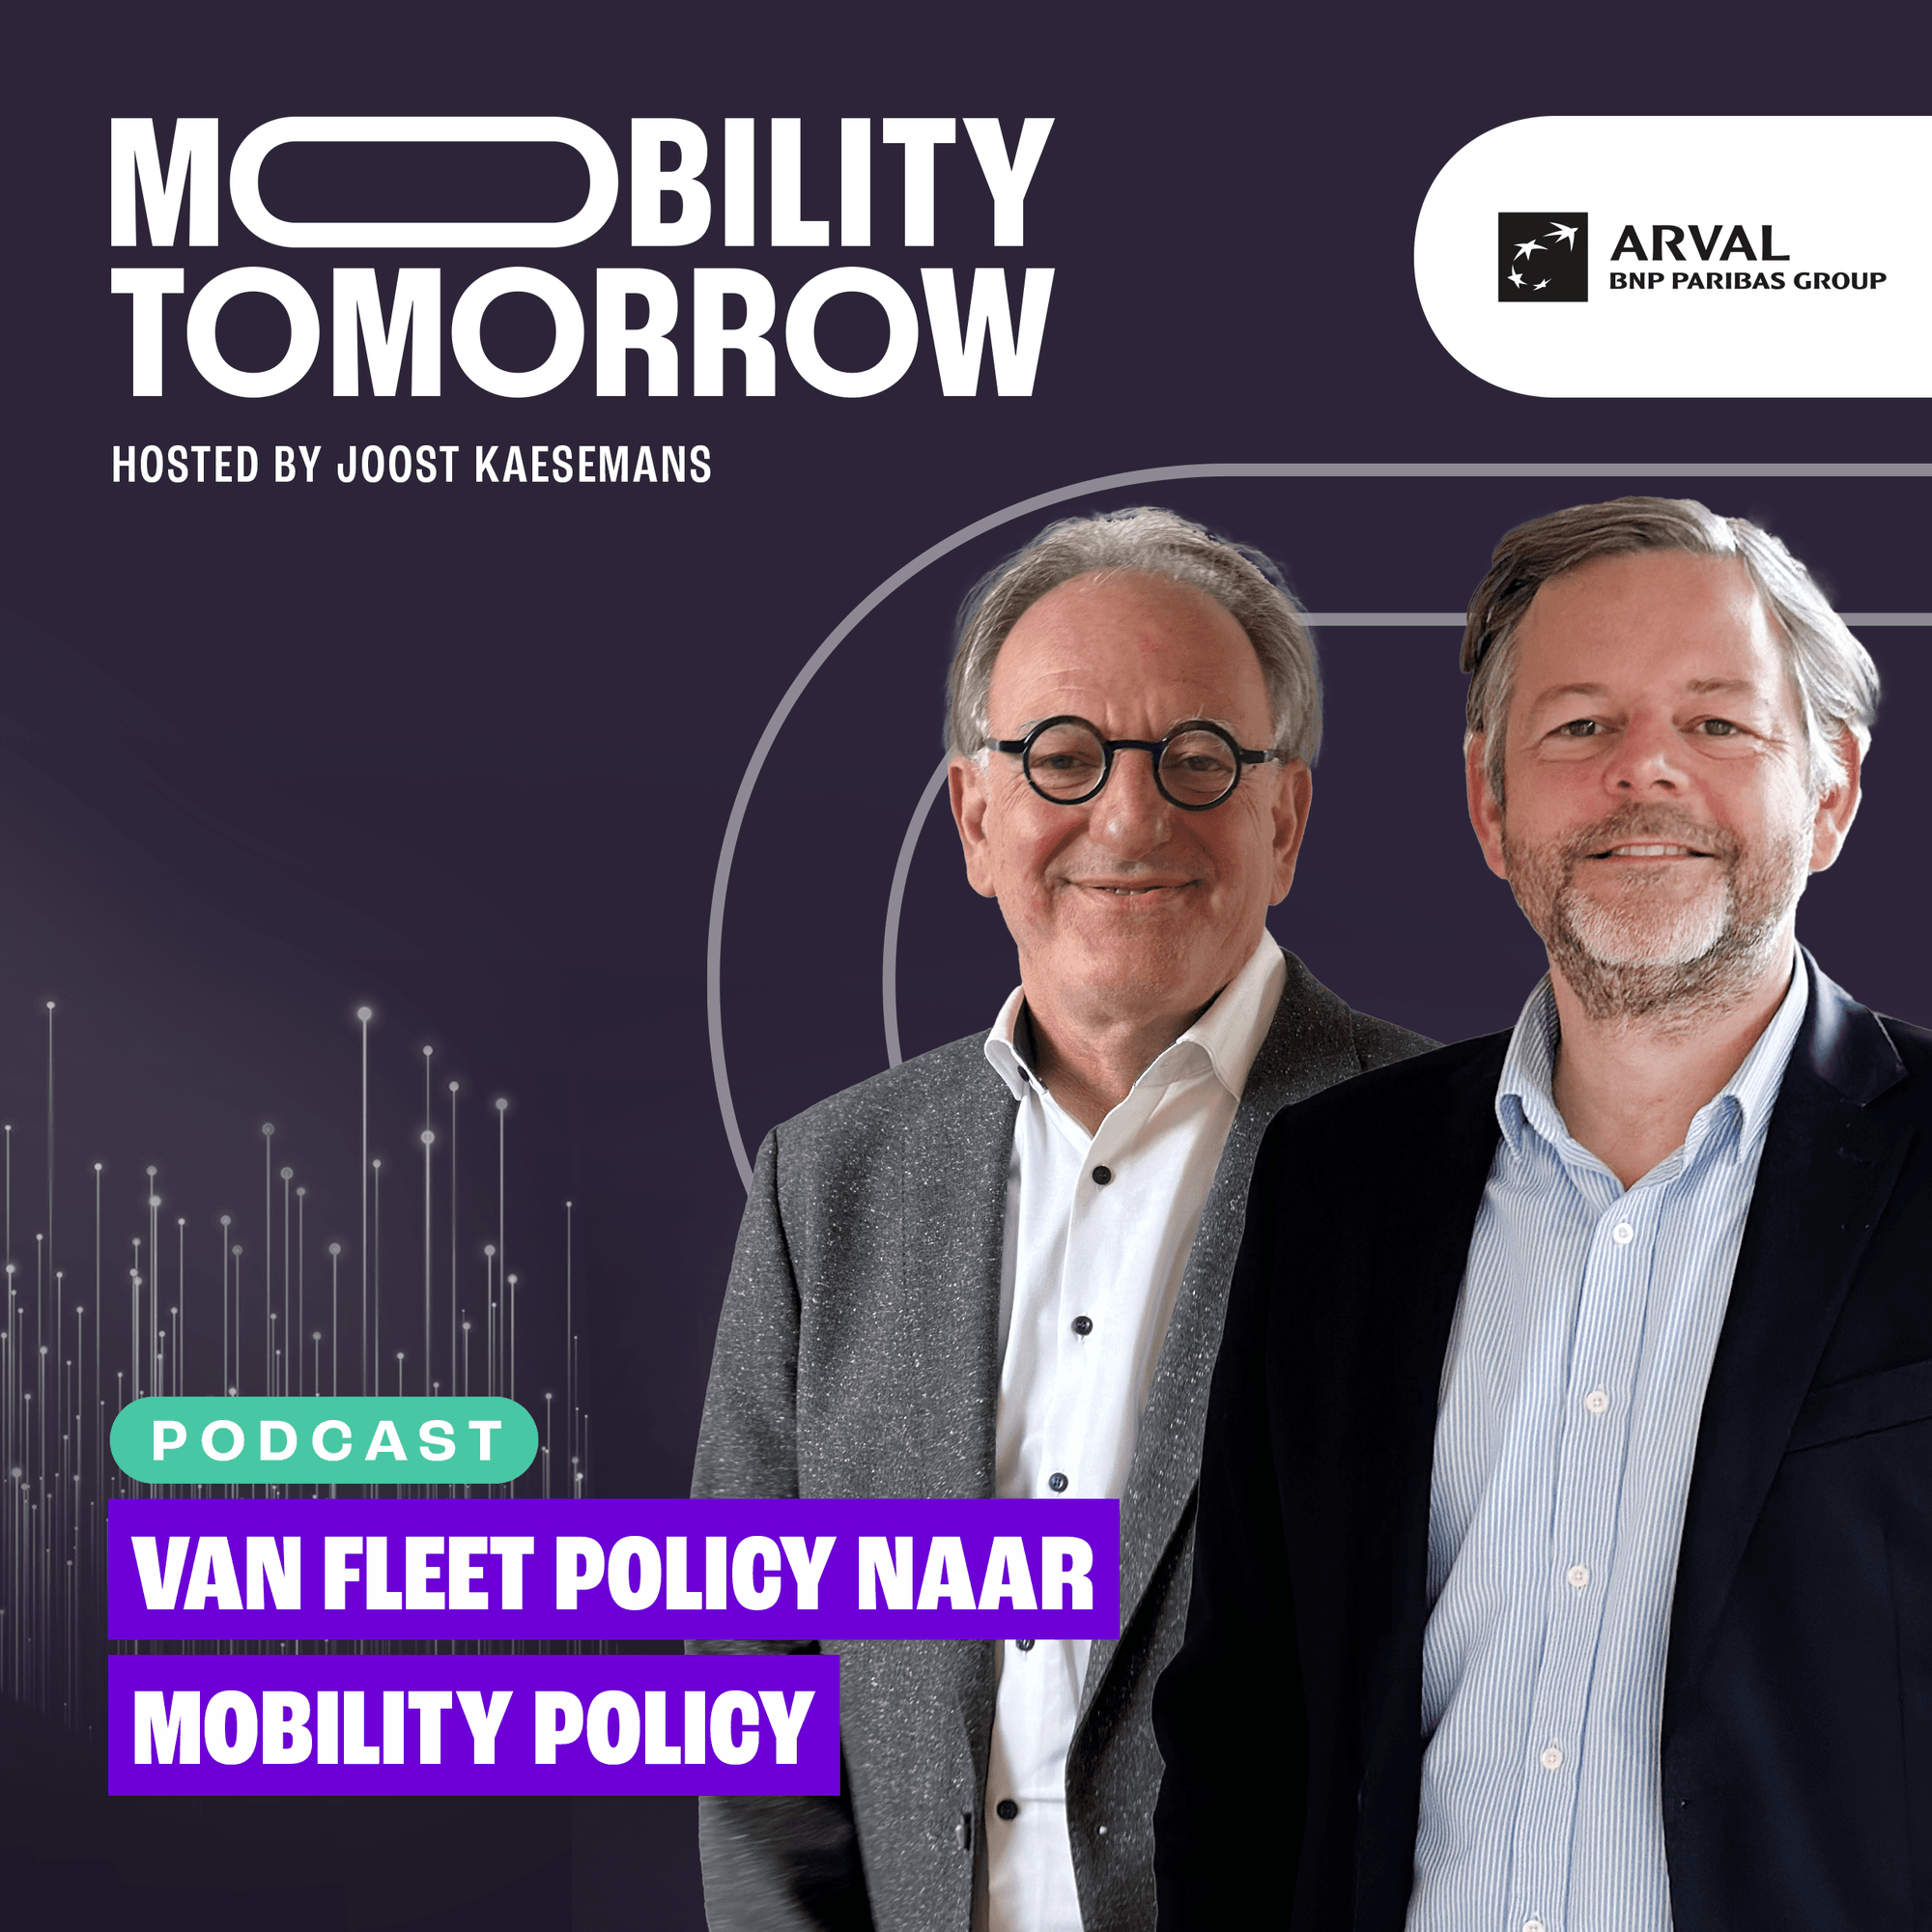 Van fleet policy naar mobility policy